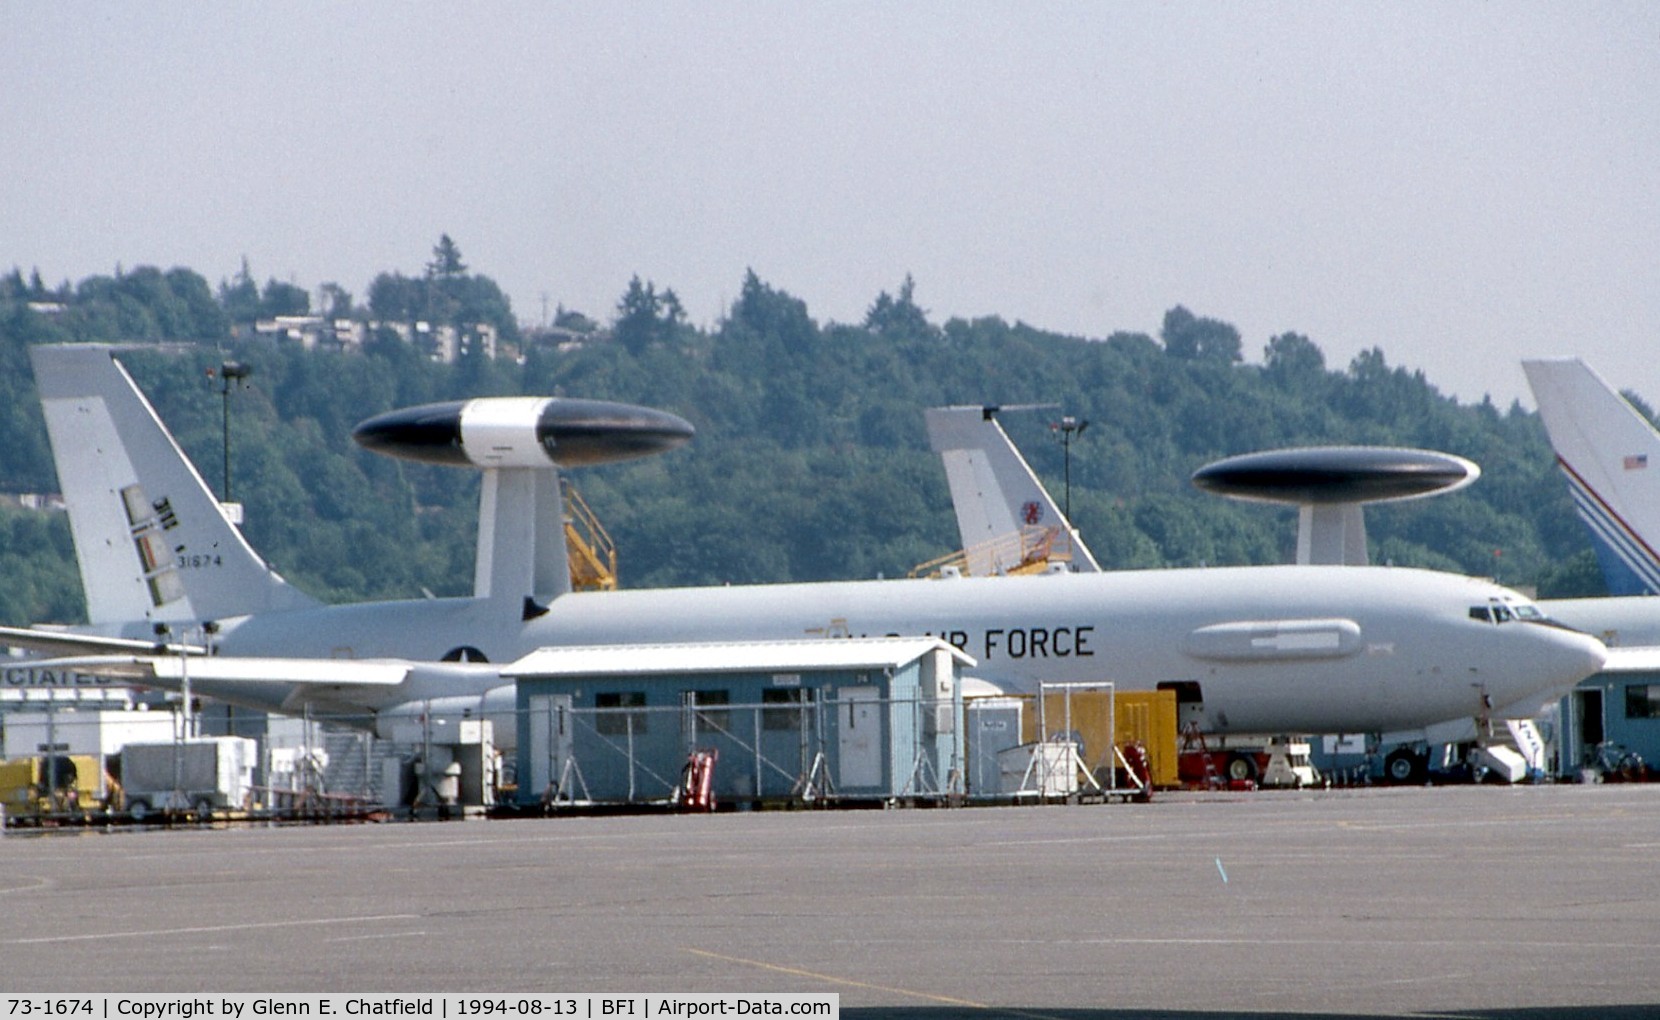 73-1674, 1973 Boeing E-3C Sentry C/N 21046, E-3C at Boeing